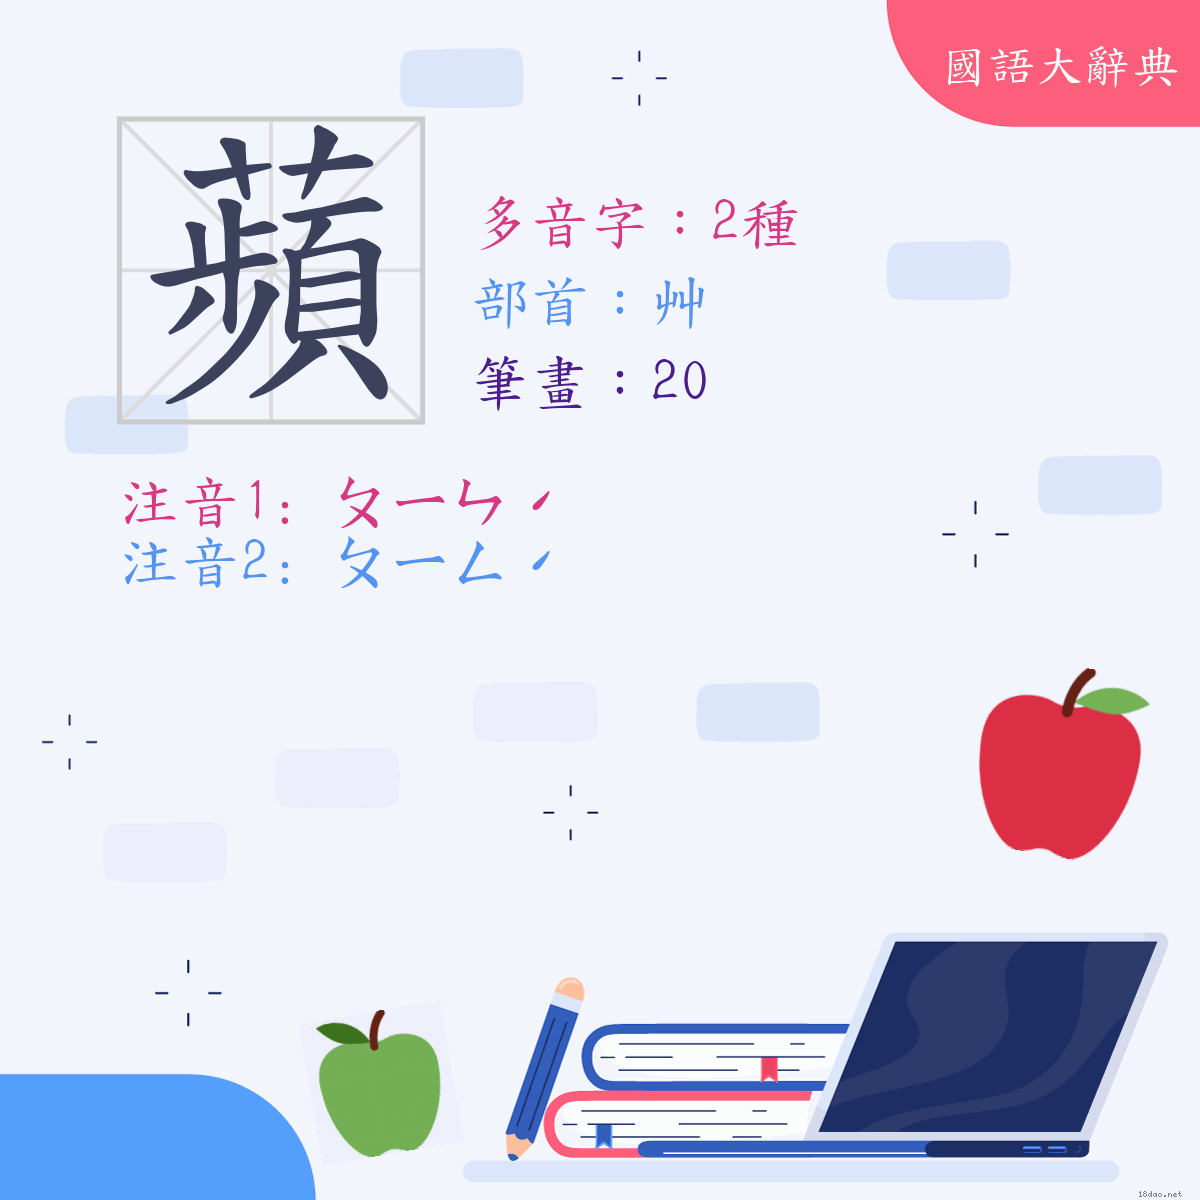 漢字: 蘋 (多音字)